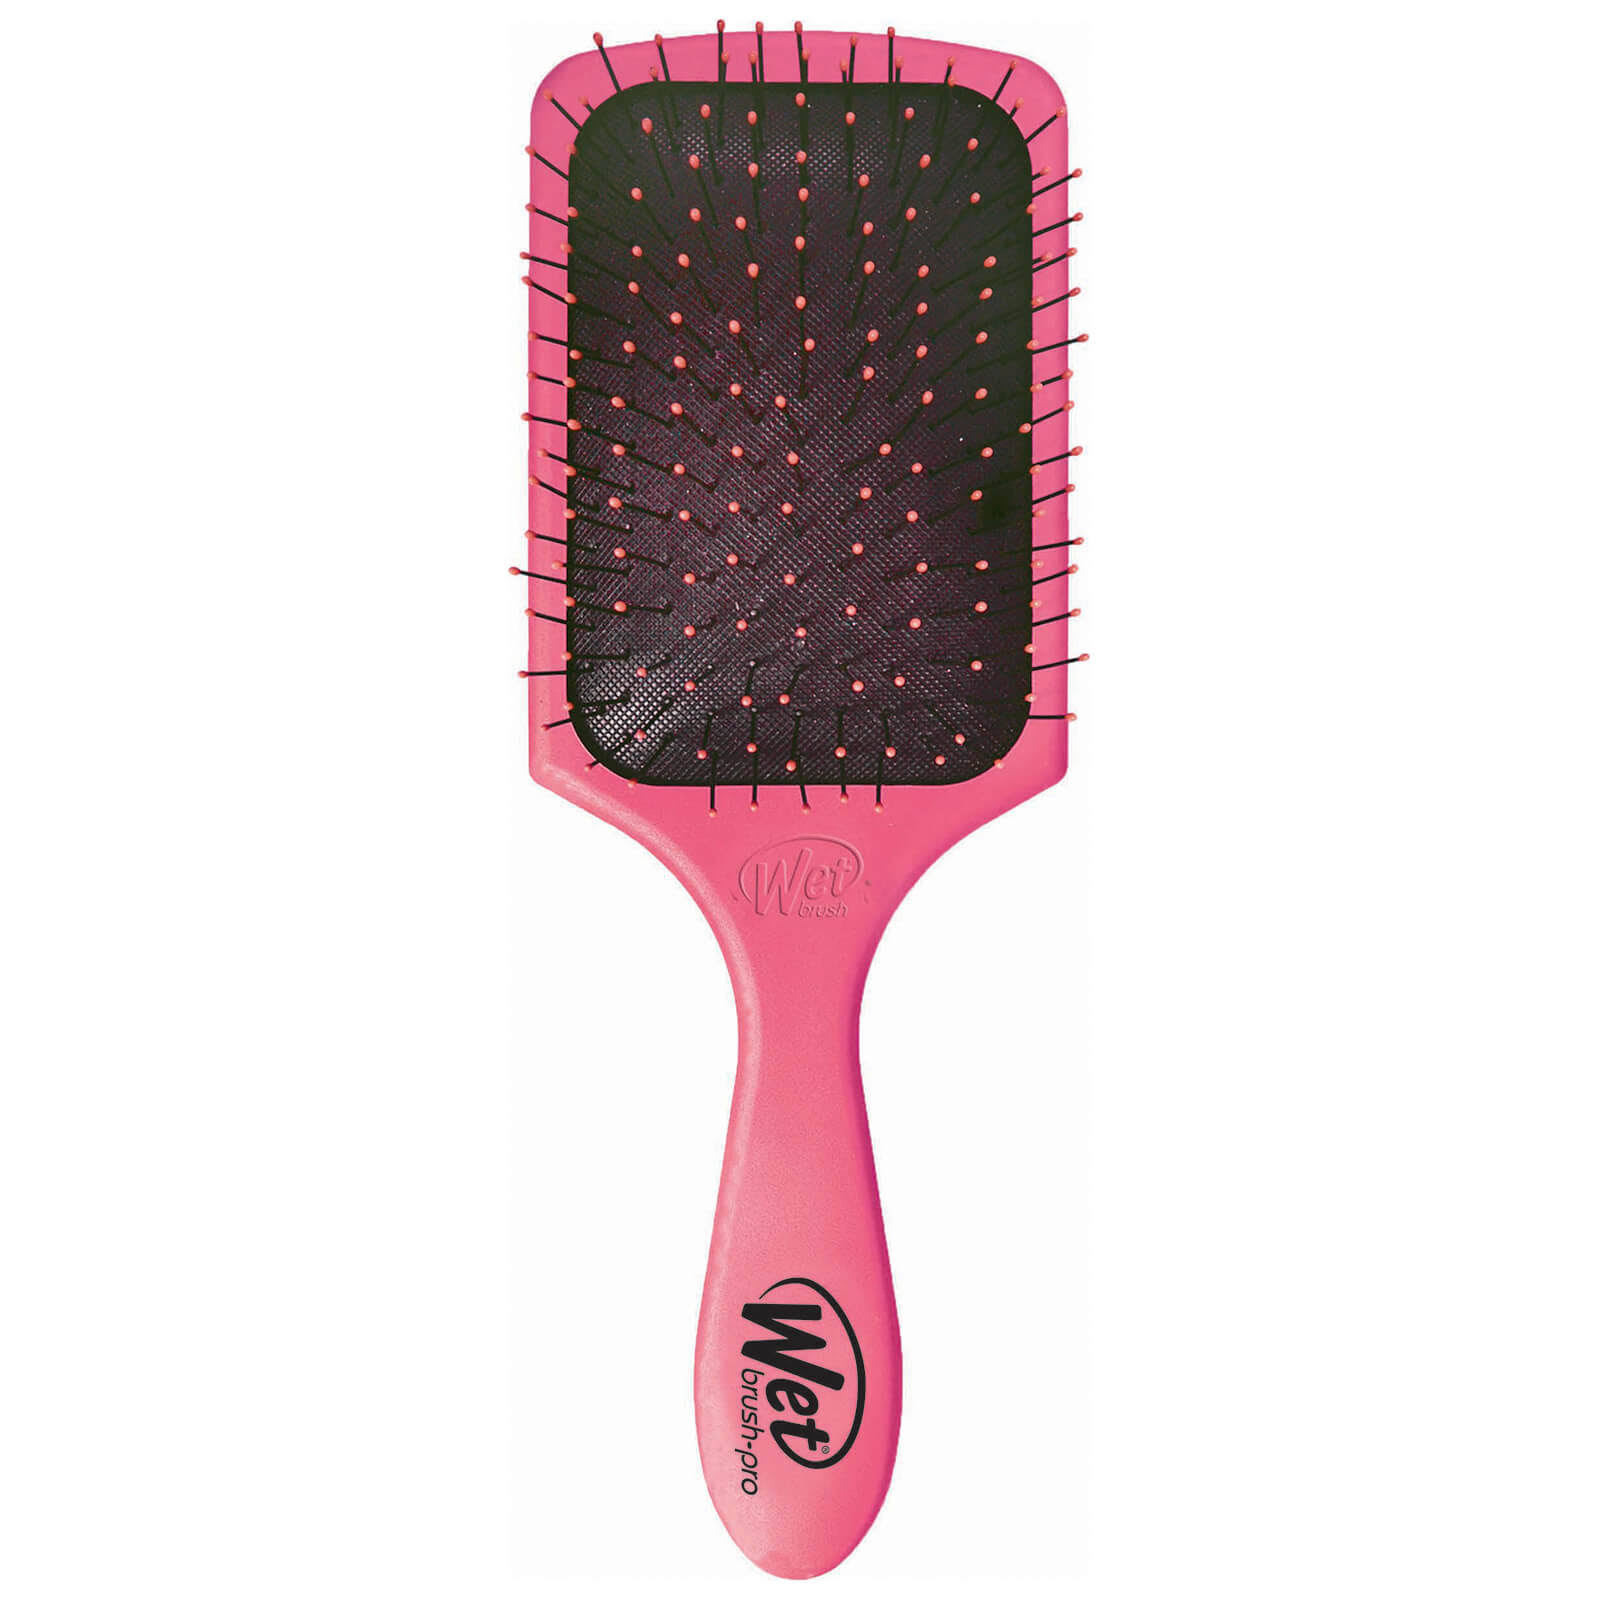 Wet Brush Paddle Detangler Pink